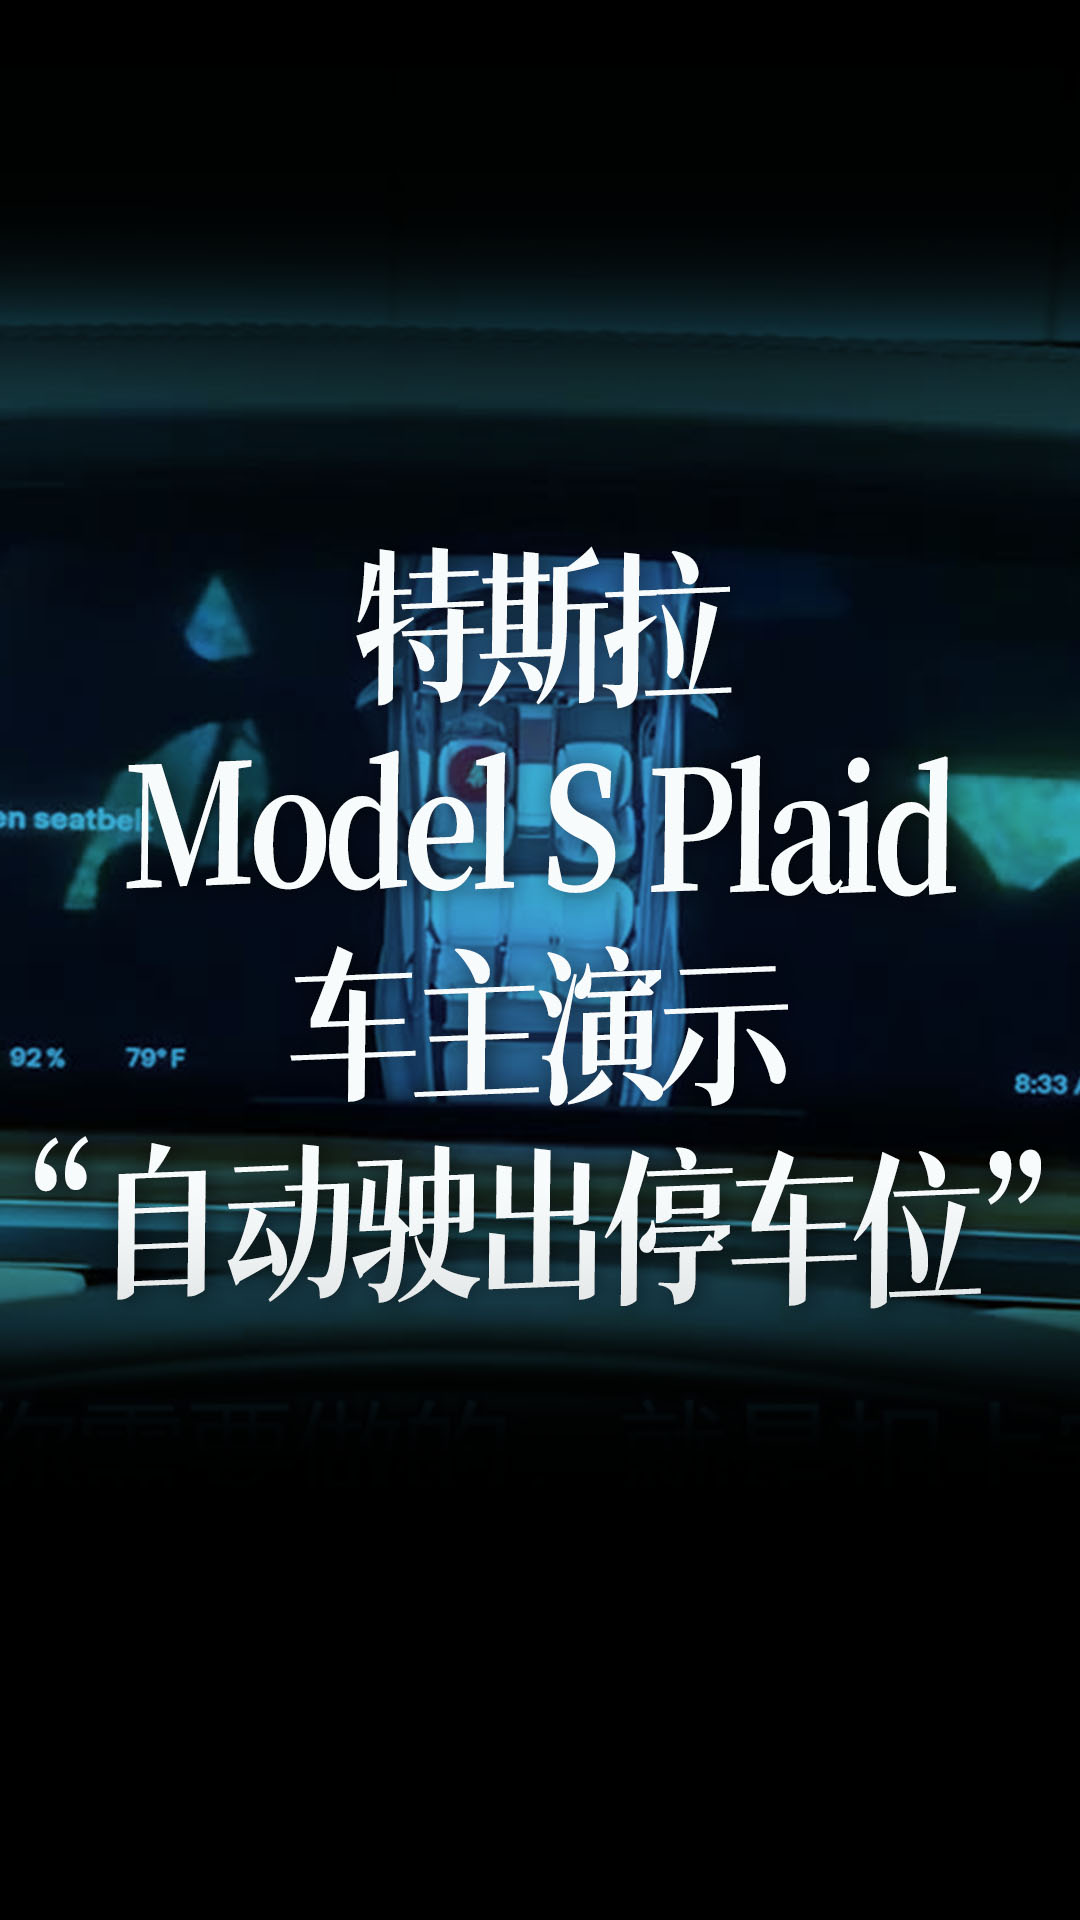 特斯拉Model S Plaid车主演示“自动驶出停车位”功能